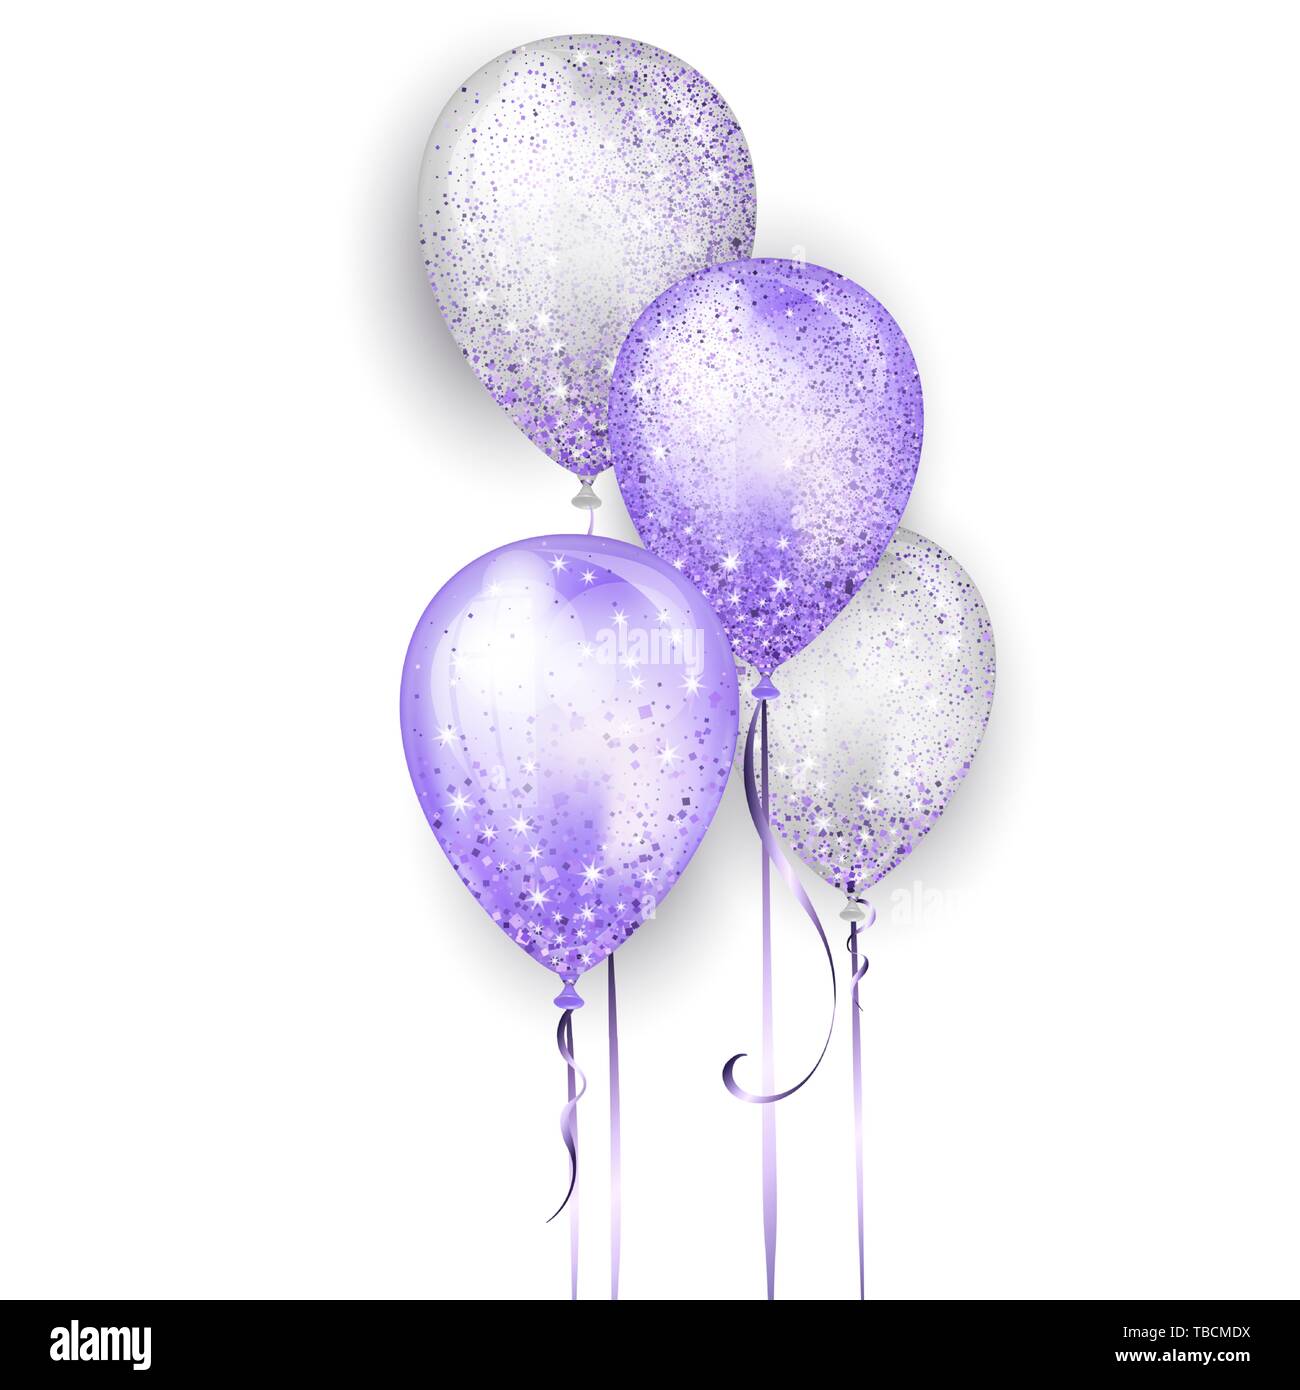 2,223 Violet Ballon Images, Stock Photos, 3D objects, & Vectors